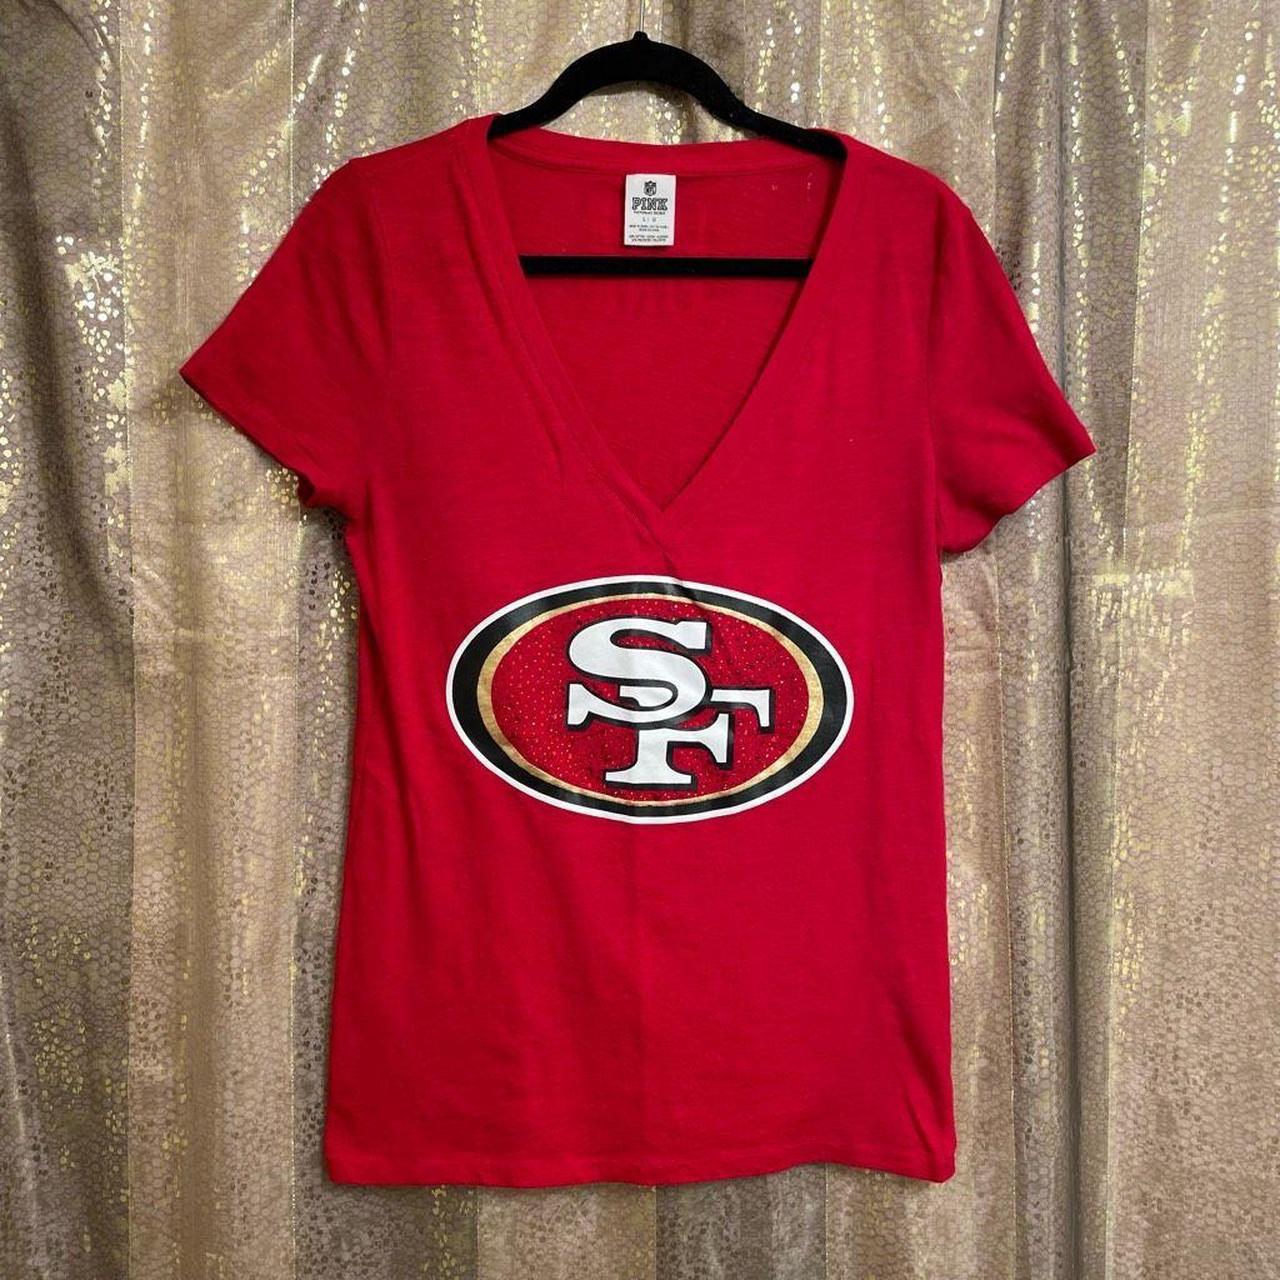 PINK Victorias Secret SF 49ers NFL Red Gold - Depop